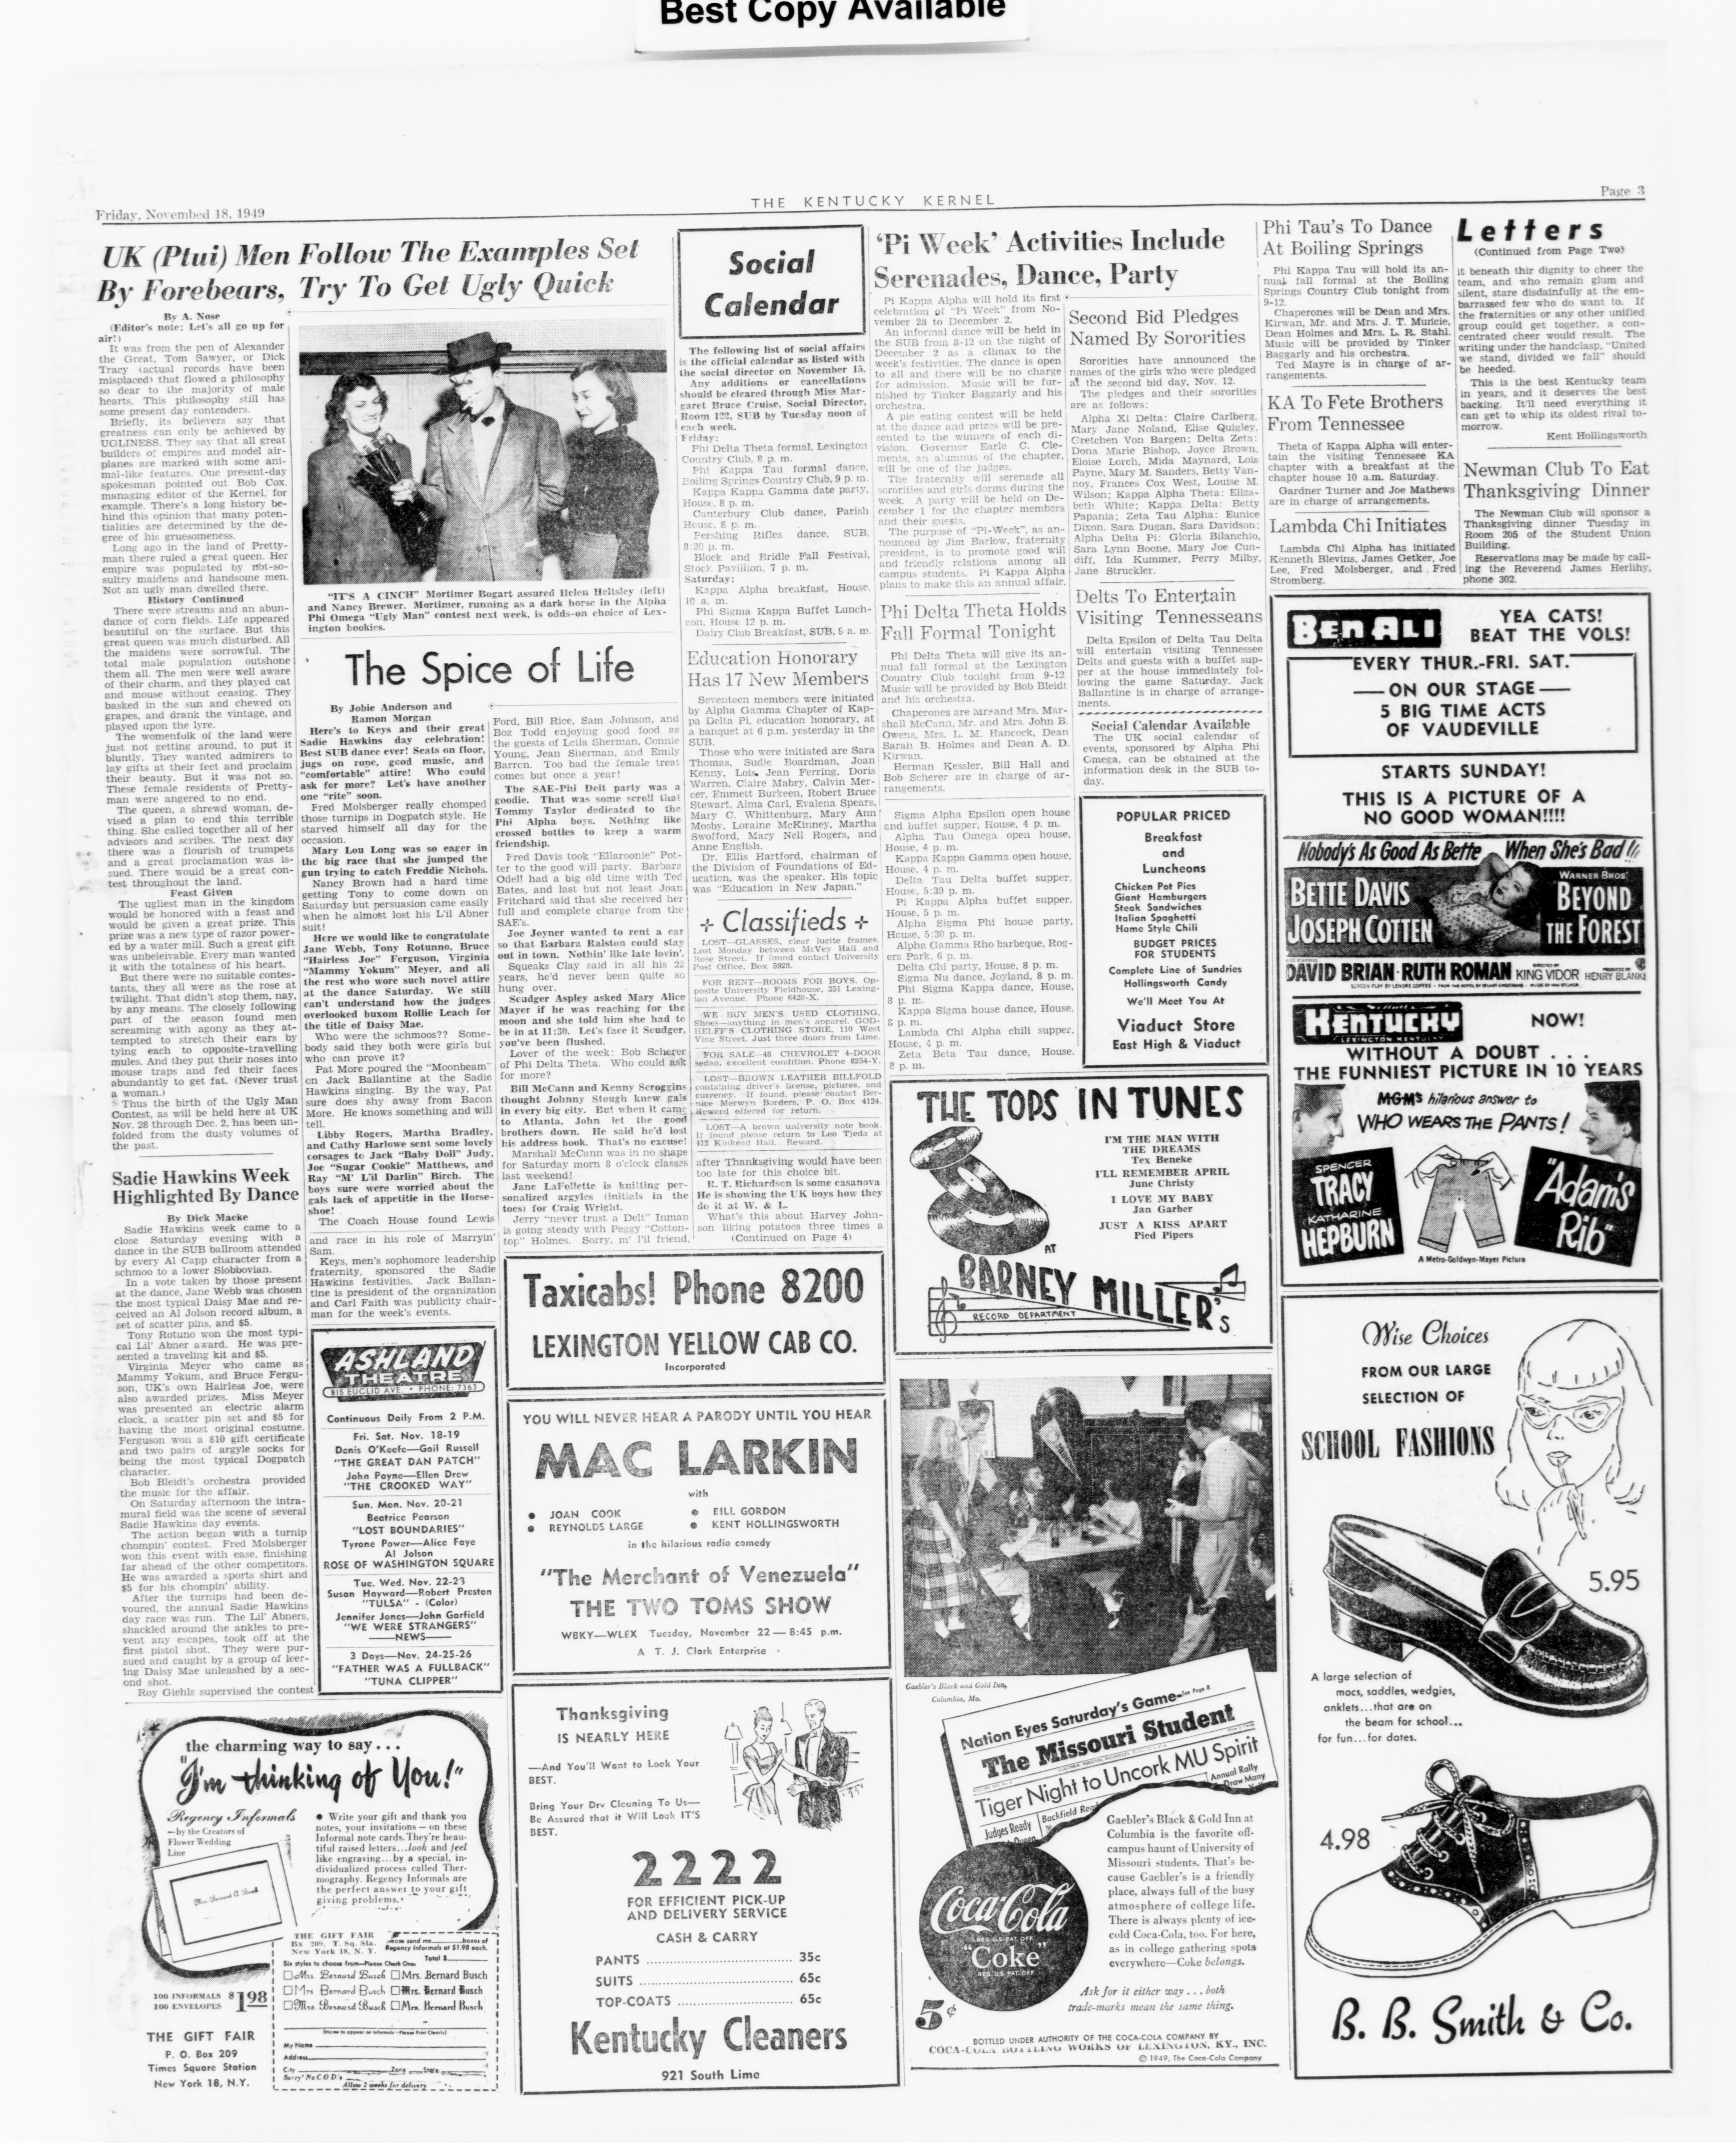 1949–50 Volume 74 No 1–5 - Phi Delta Theta Scroll Archive